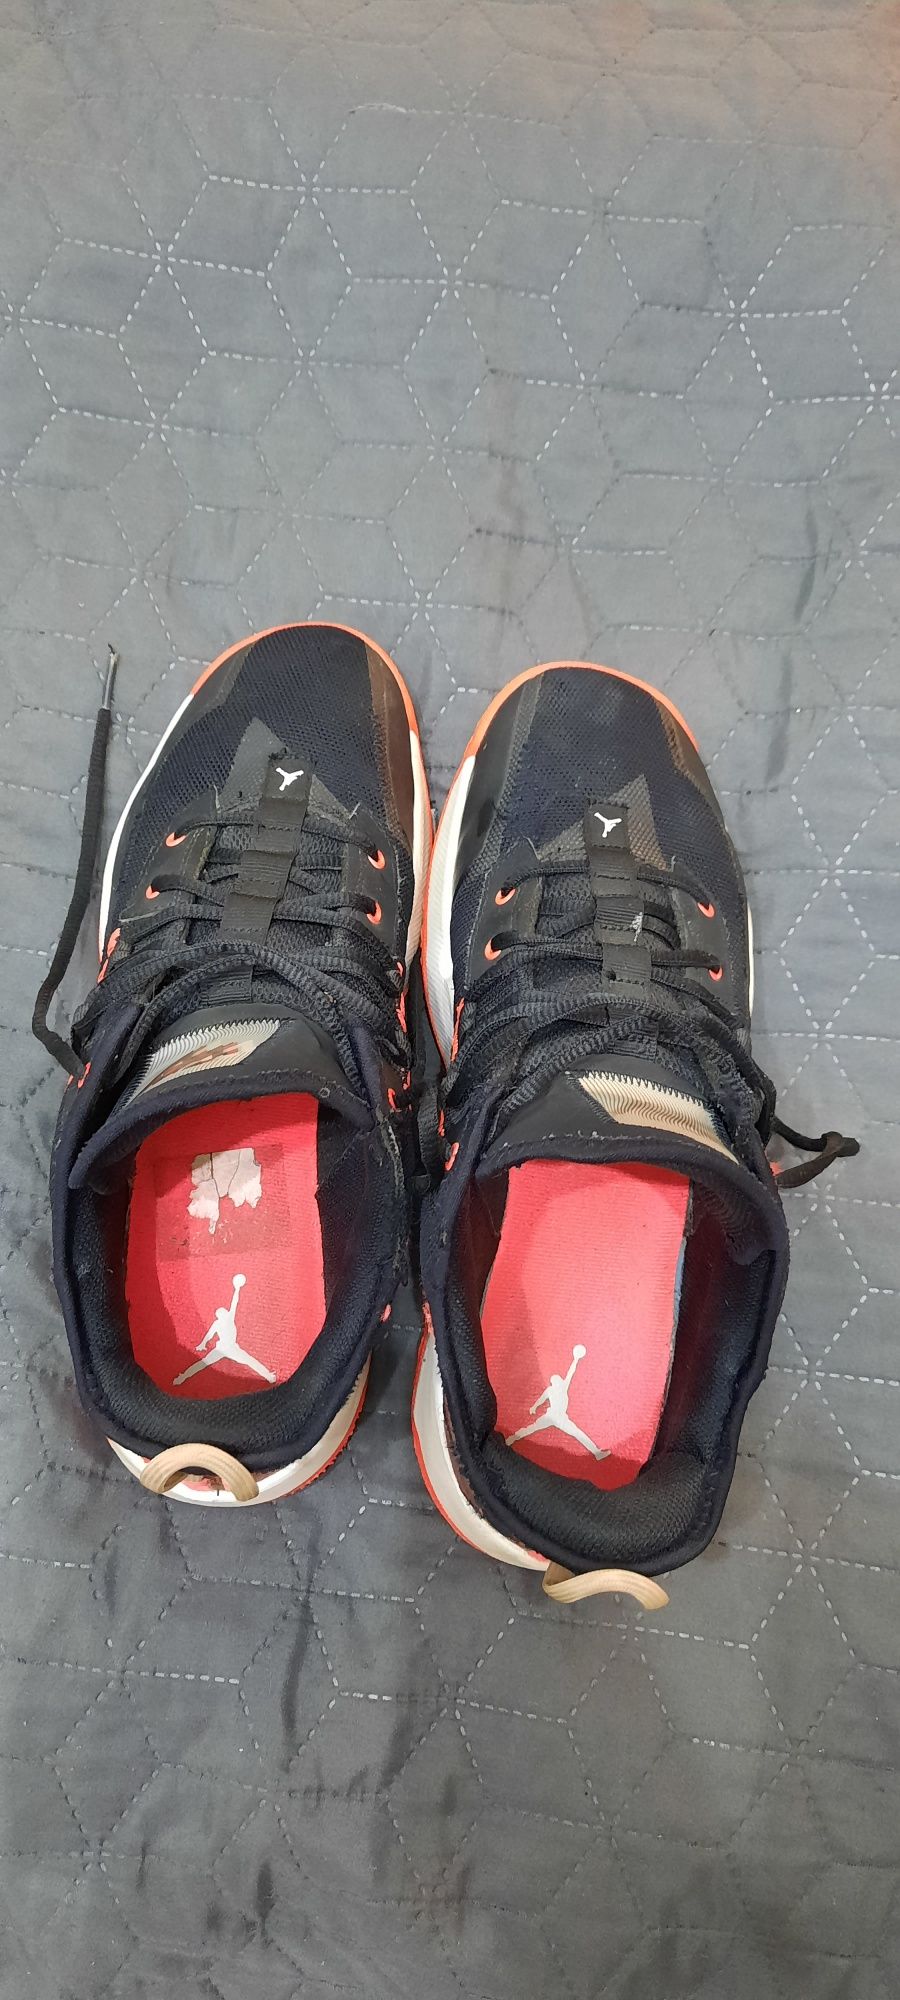 Pantofi sport Jordan barbati m 44